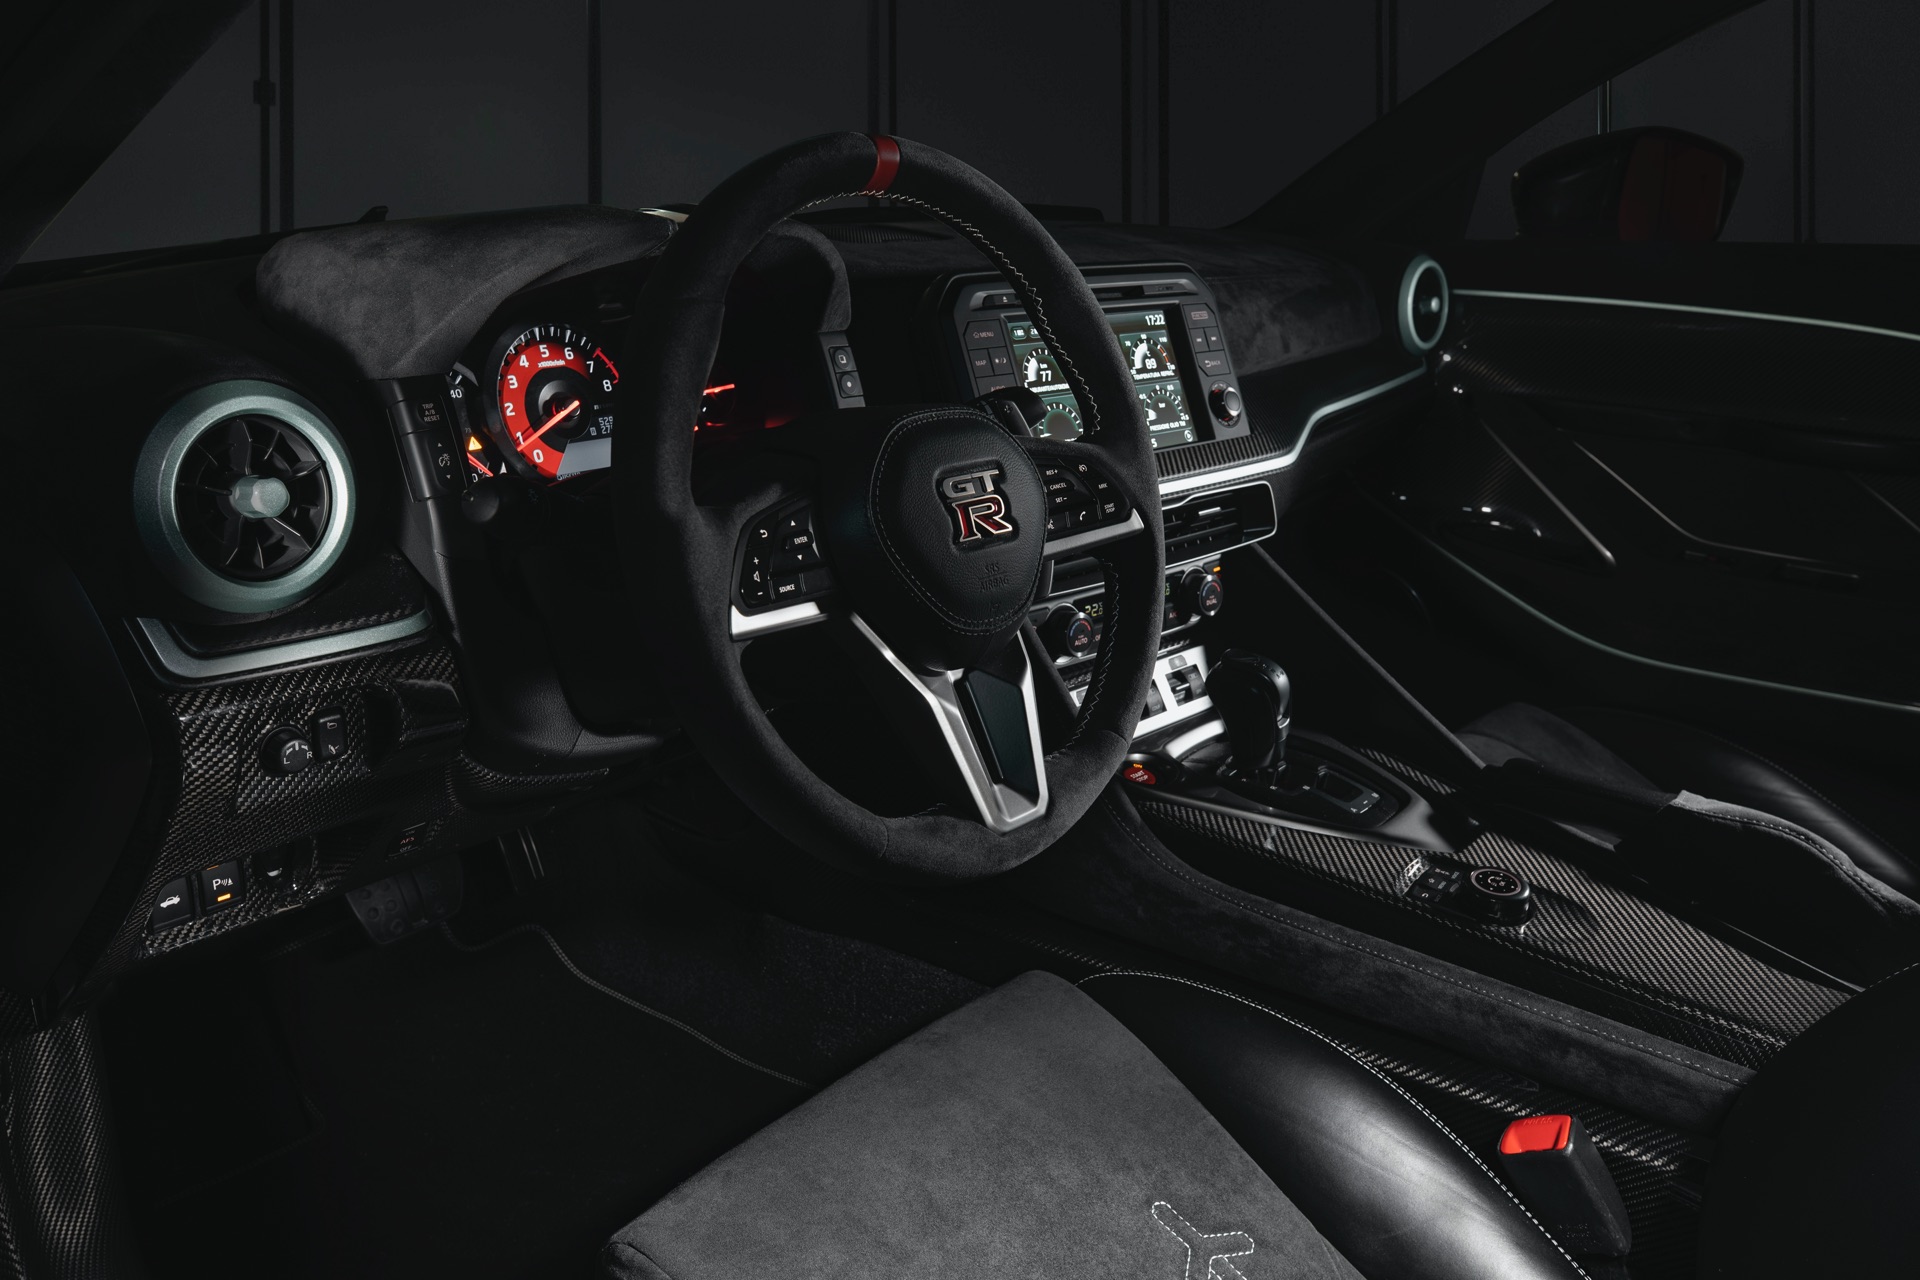 Italdesign выпустил финальную версию своего суперкара Nissan GT-R50. Итальянская студия дизайна, принадлежащая группе Volkswagen, представила концепт GT-R50 на Женевском автосалоне 2019. Он был разработан, чтобы отпраздновать 50-летие Nissan, и вскор